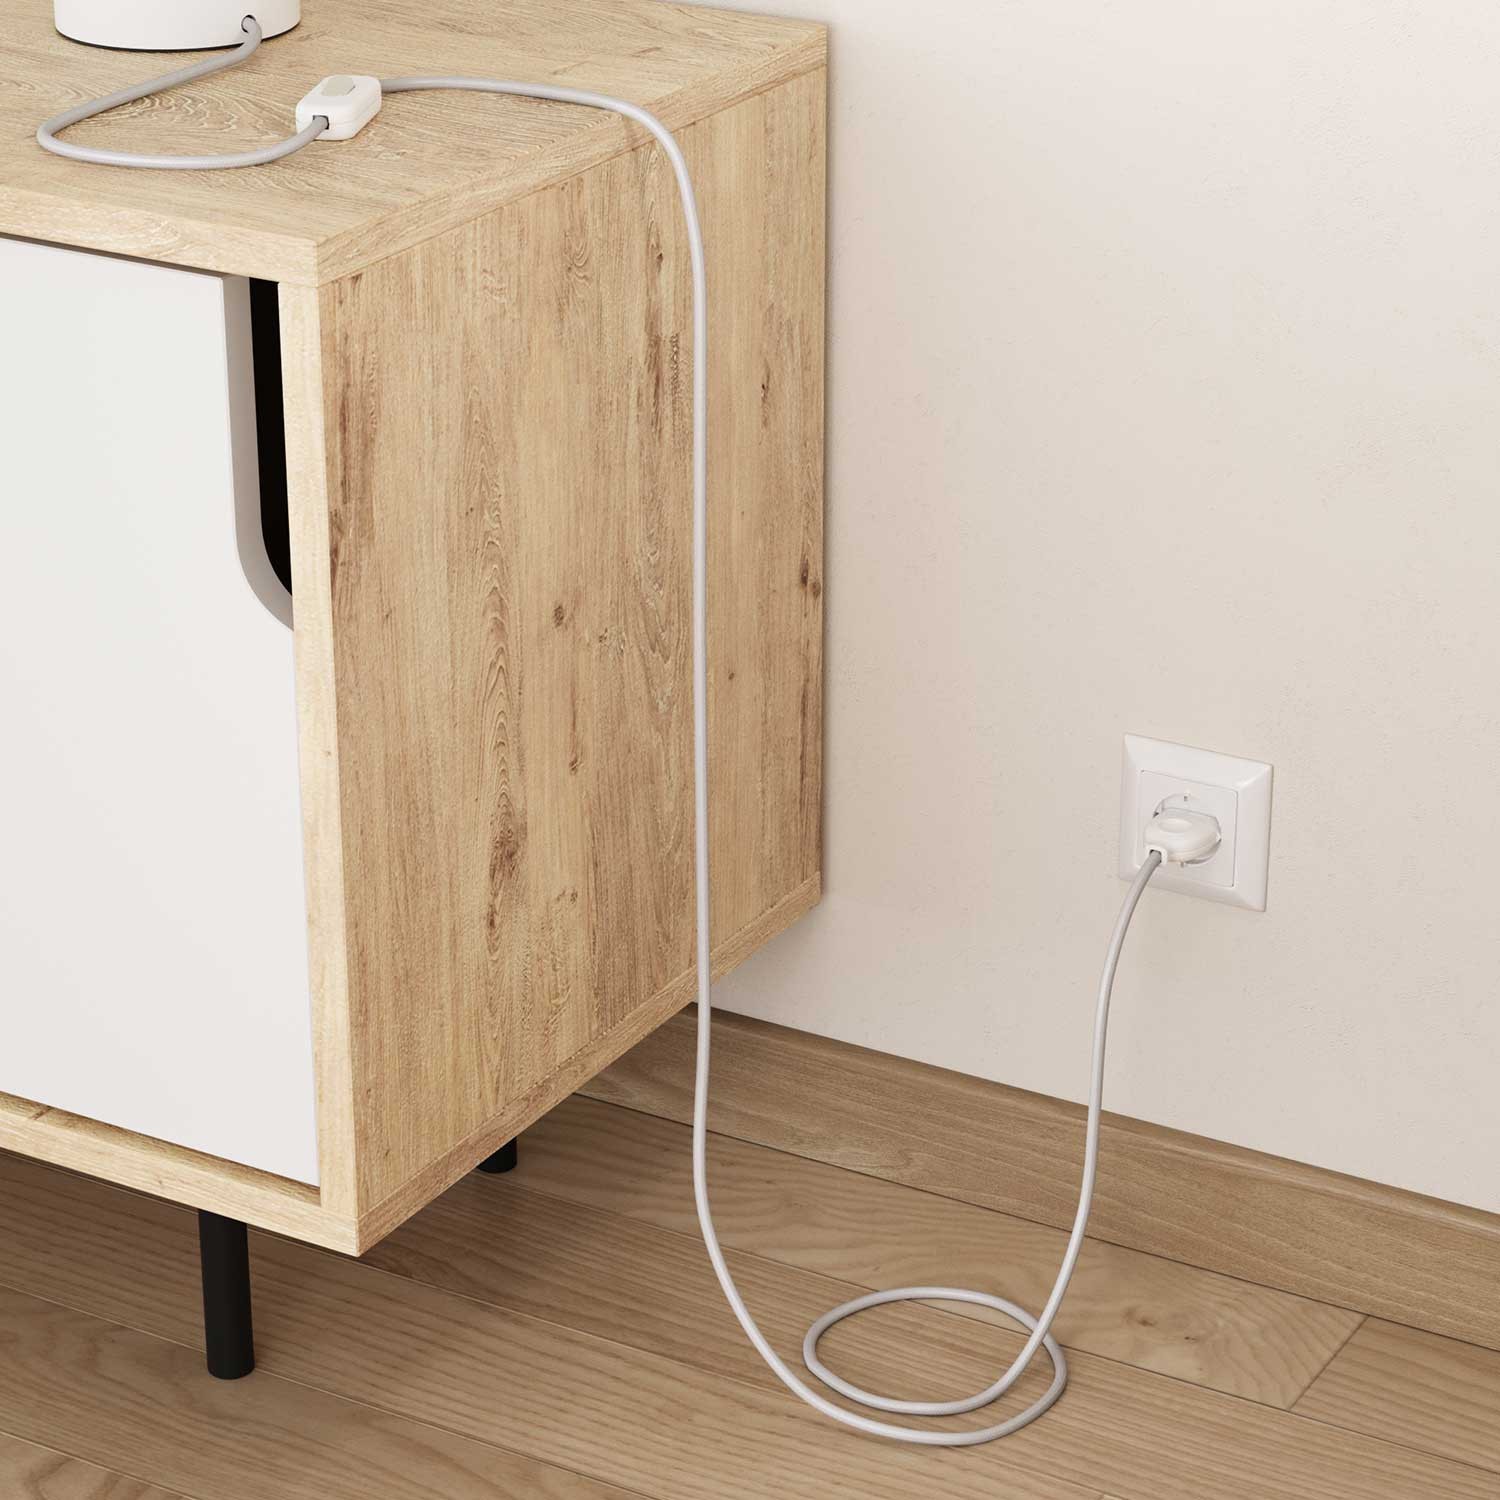 Elektrisches Kabel rund überzogen mit Textil-Seideneffekt Einfarbig Weiß RM01